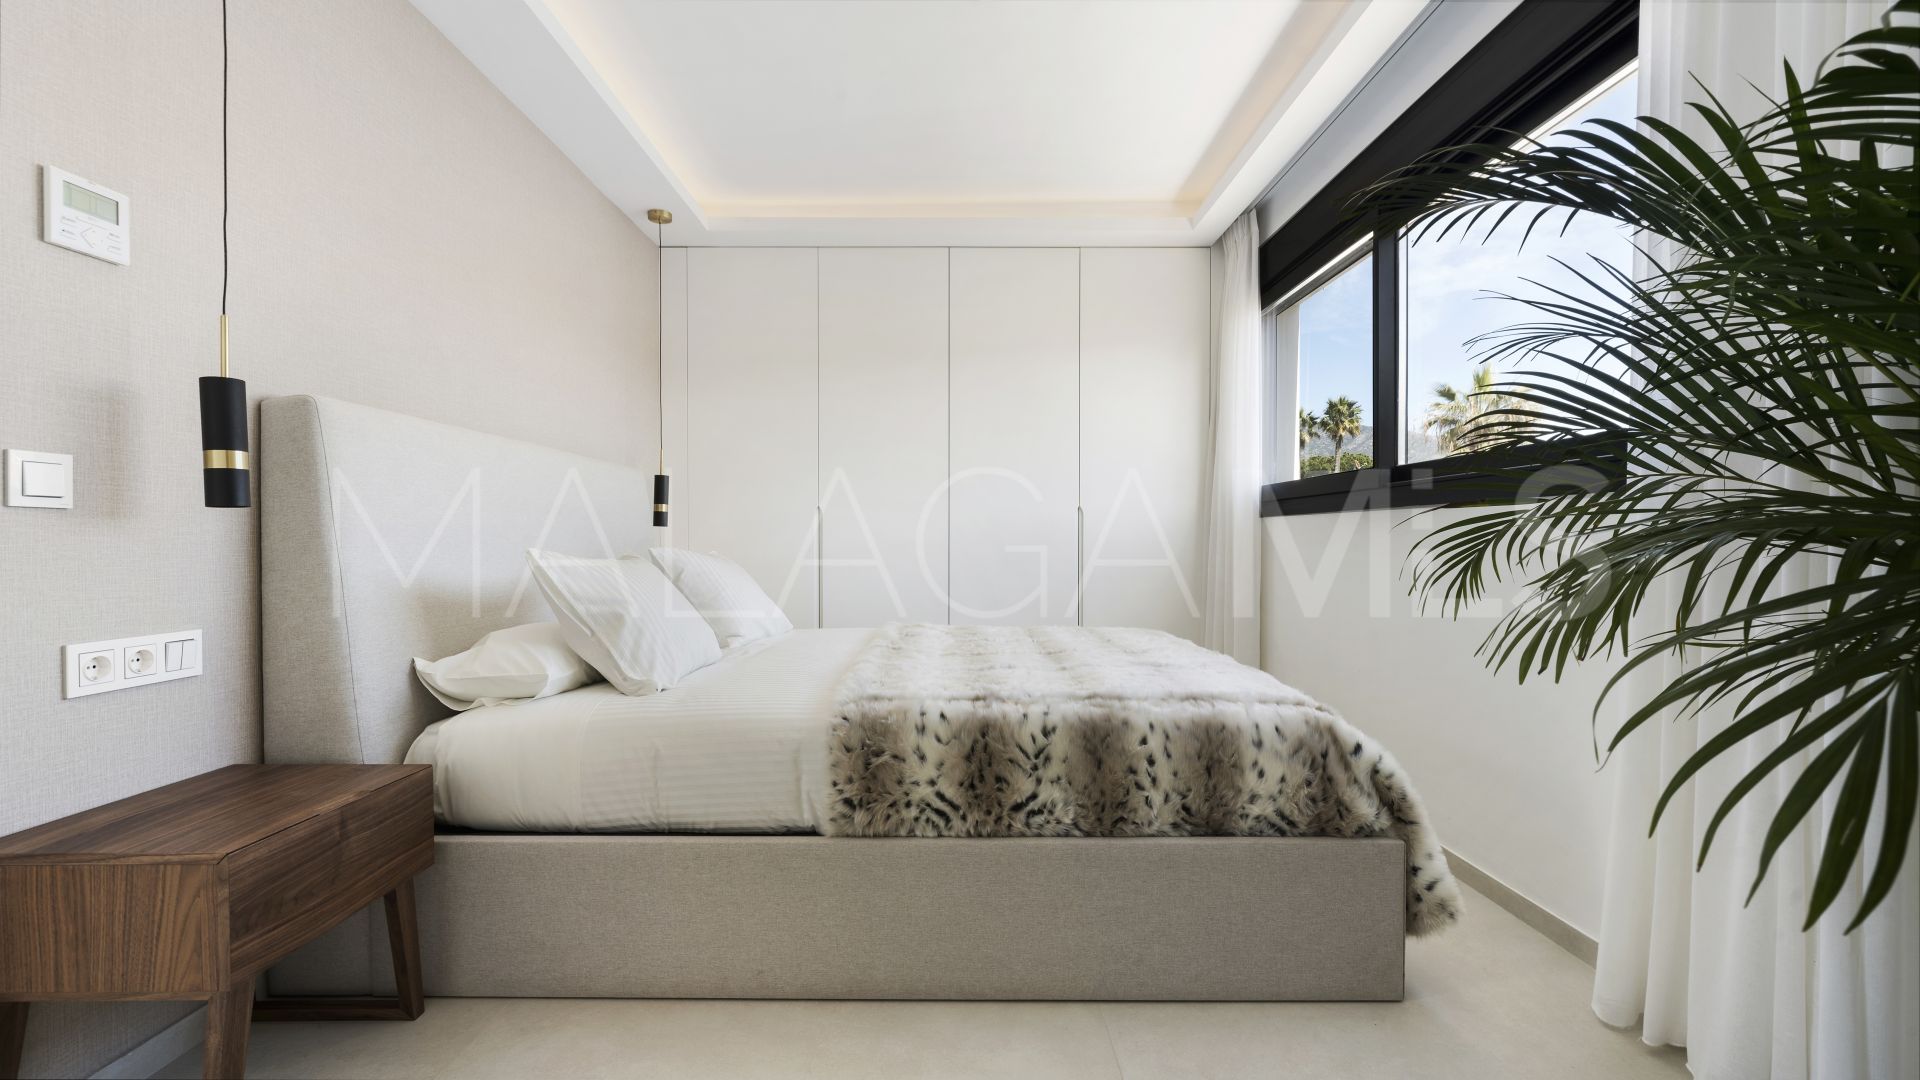 Buy adosado in Marbellamar with 5 bedrooms